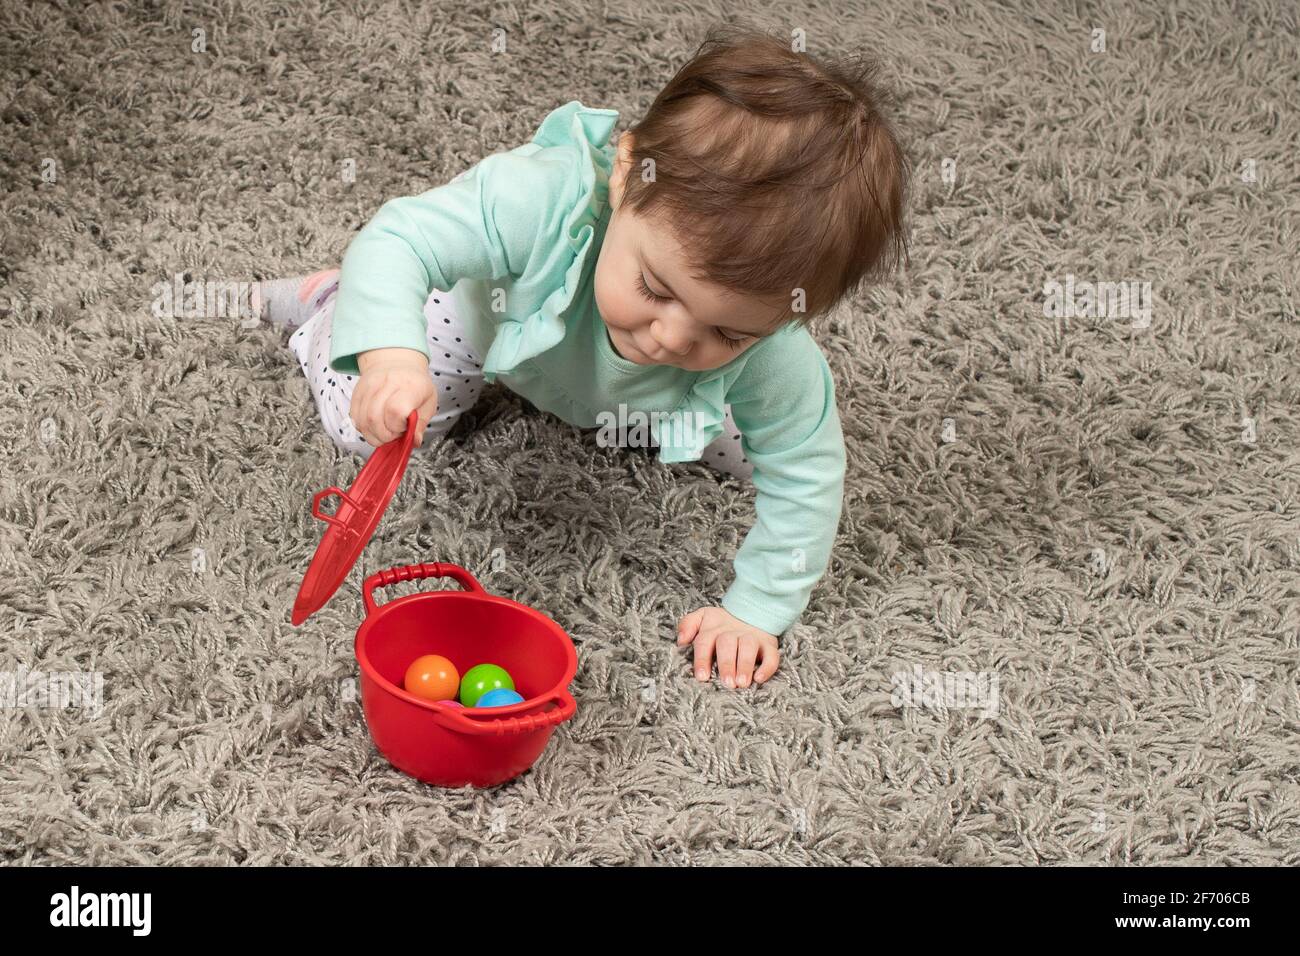 10 meses de edad bebé niña abriendo la tapa en la olla Encontrar el juguete oculto Piaget objeto permanencia Foto de stock